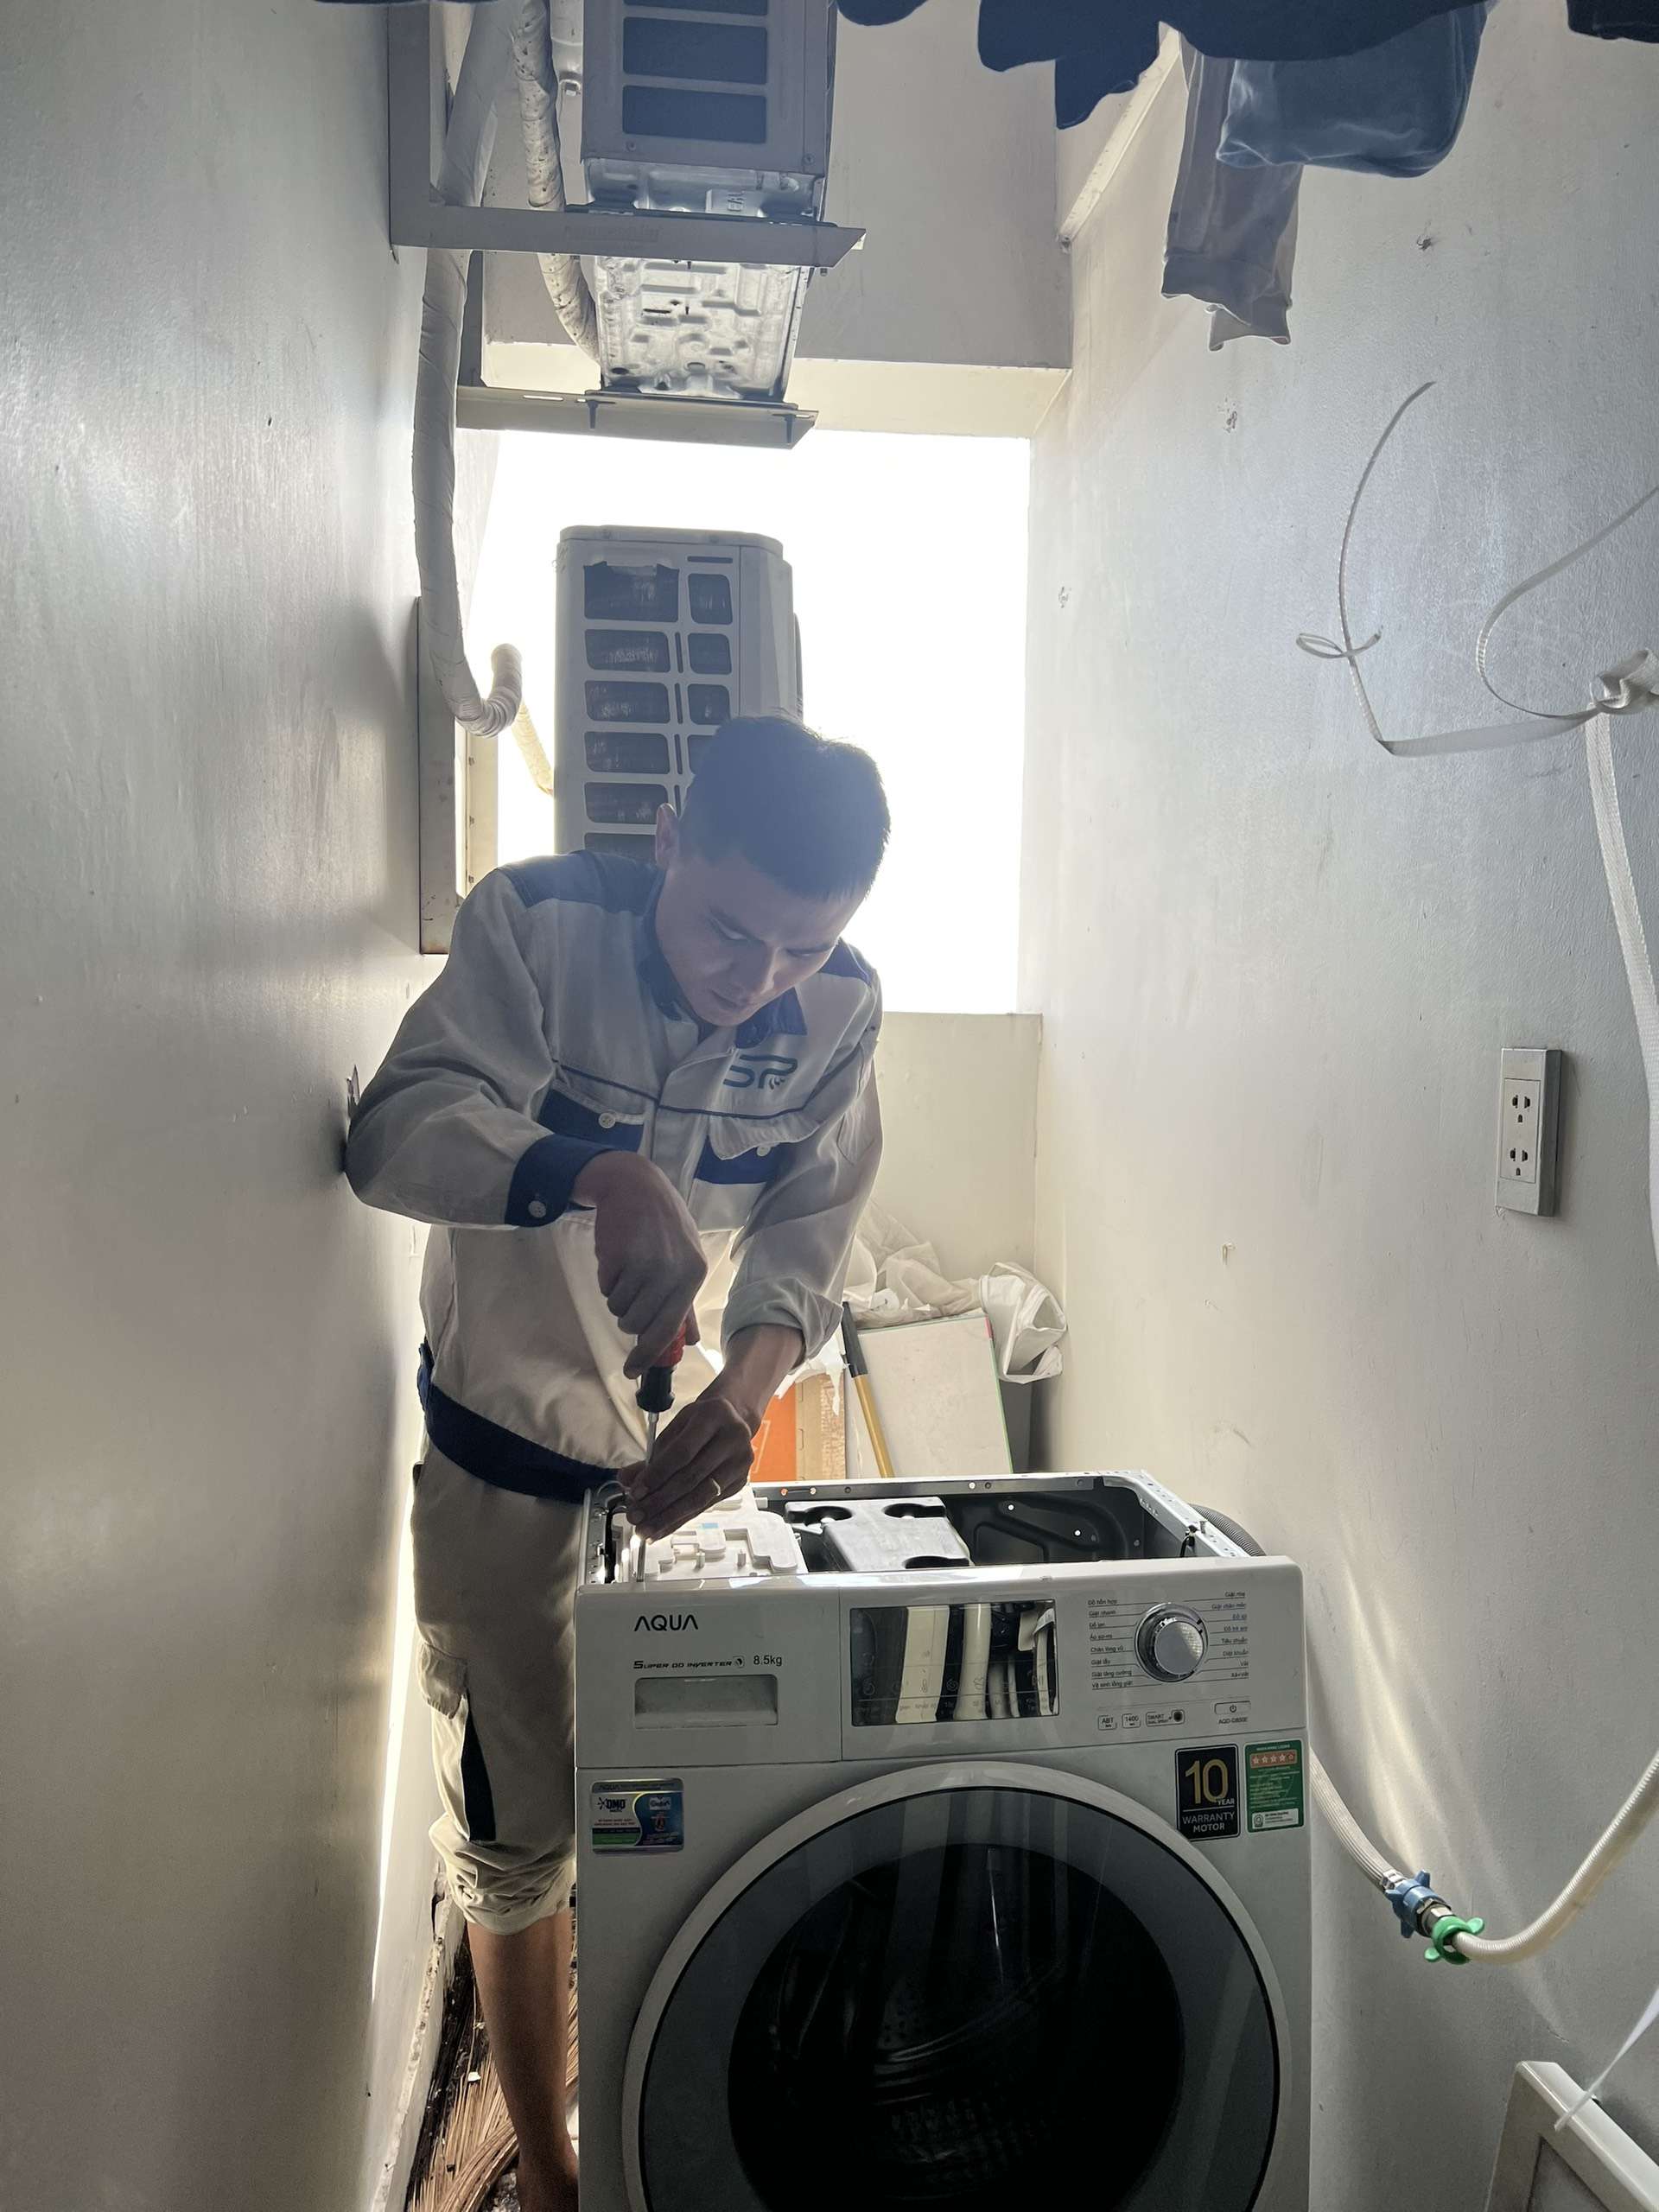 Kỹ thuật viên Điện Lạnh Sapa sửa máy giặt quận Thủ Đức tận tâm, chuyên nghiệp và nhiệt tình